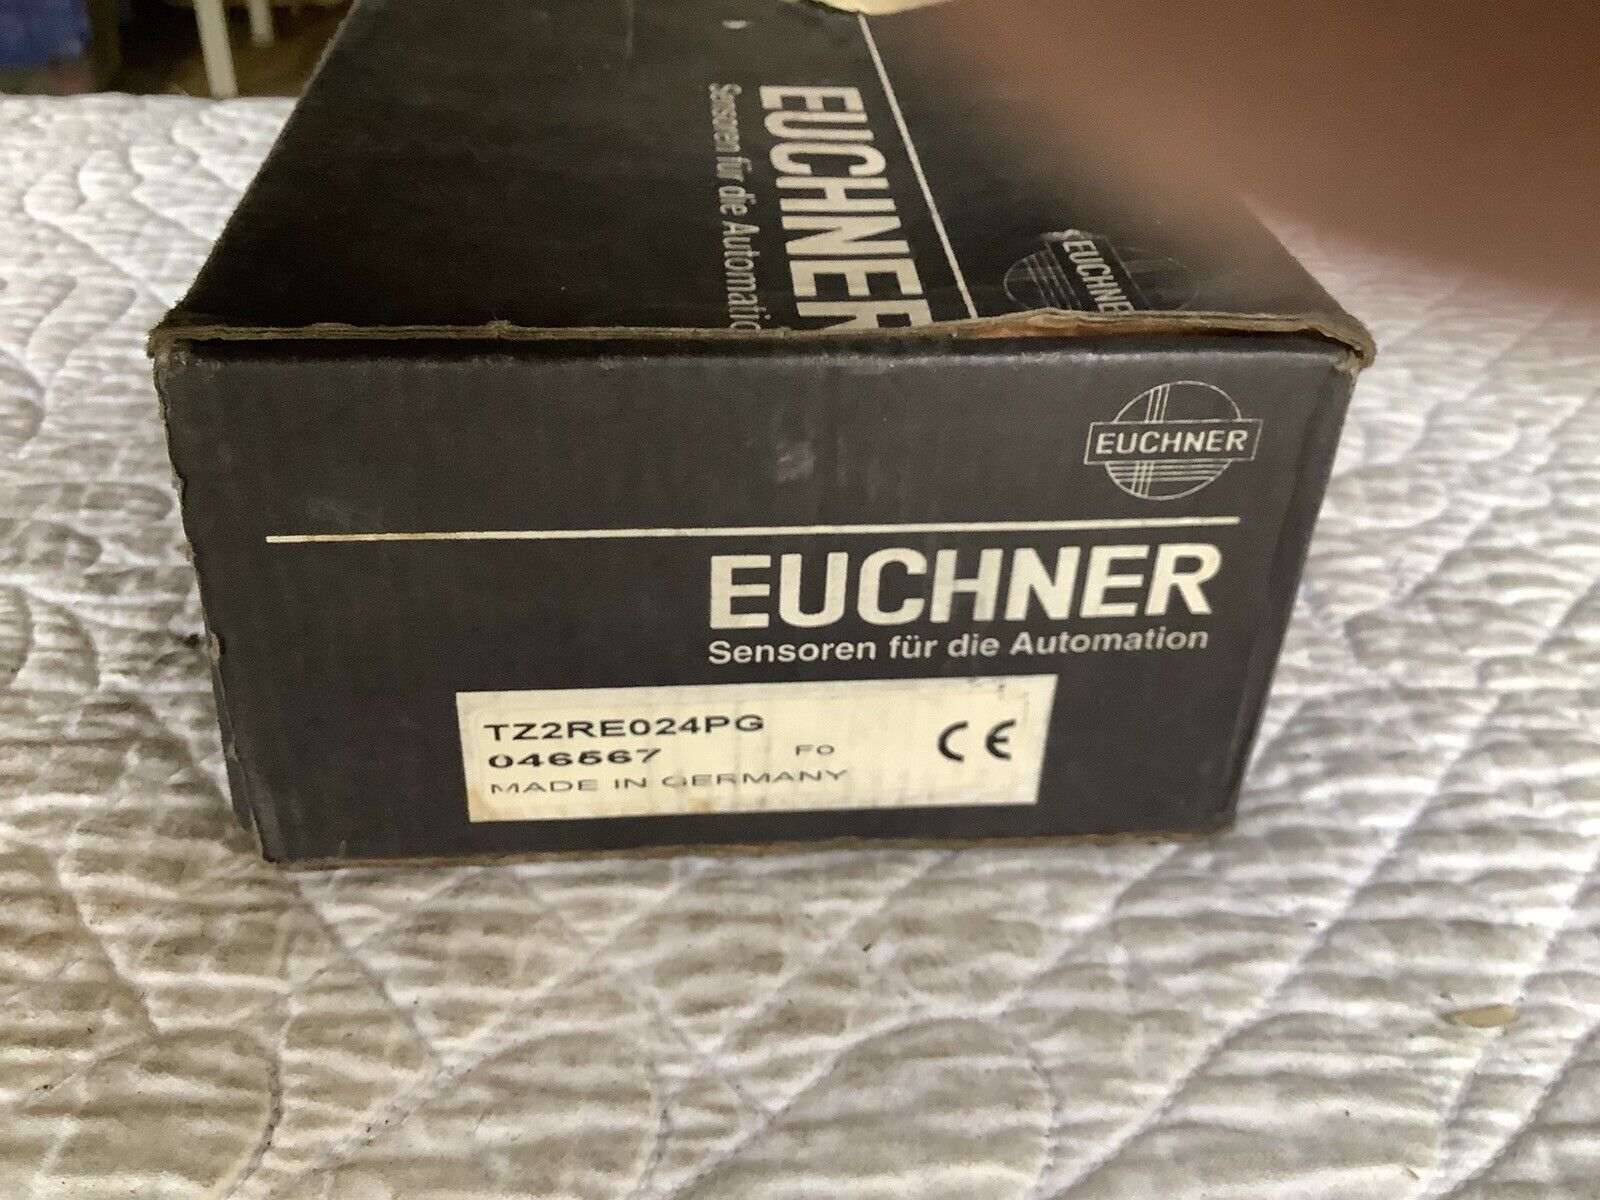 Euchner TZ2RE024PG  Safety Switch   New.  046567